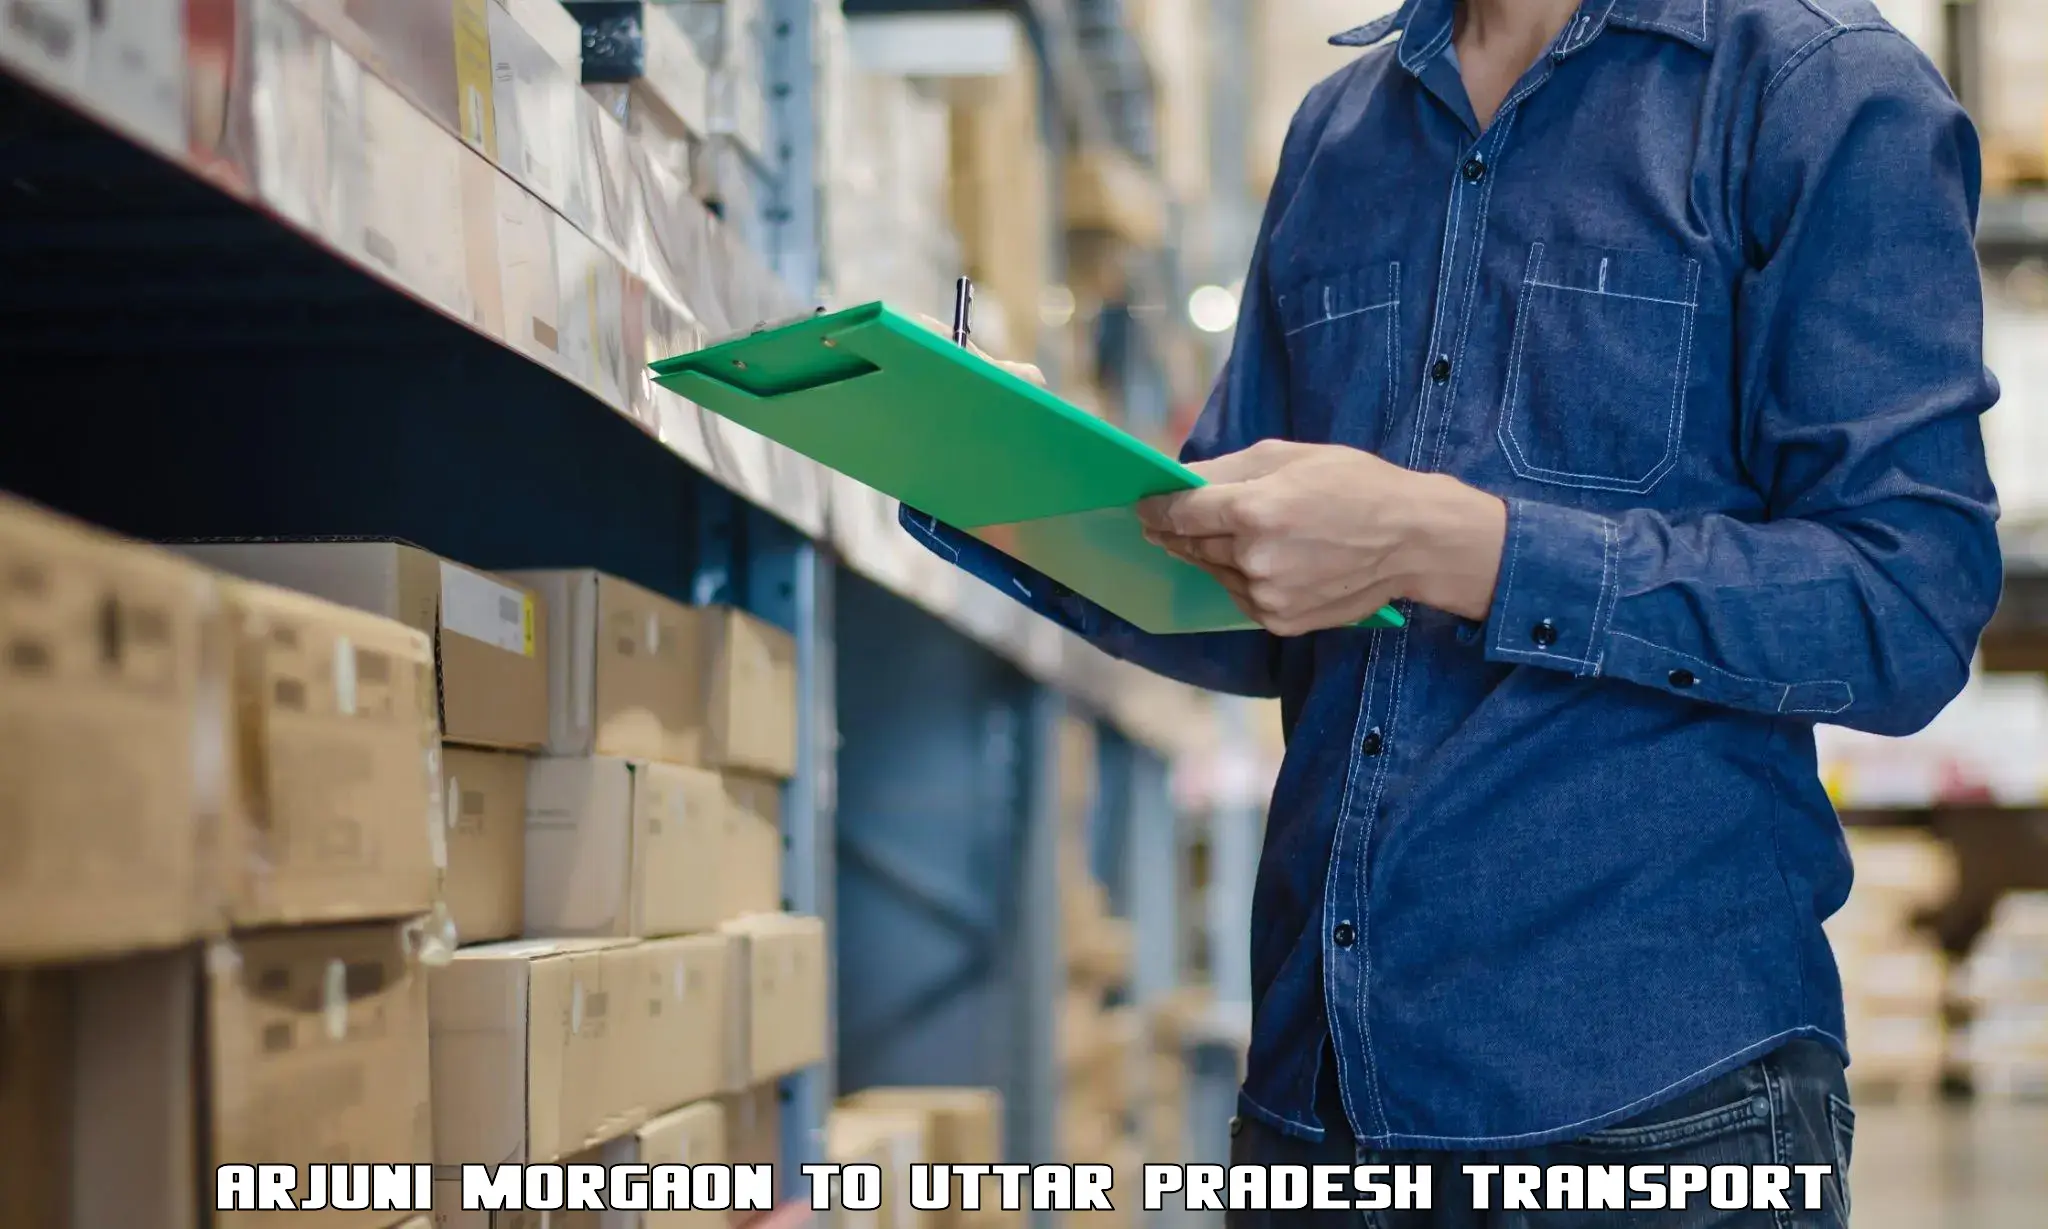 Shipping partner Arjuni Morgaon to Sewarhi